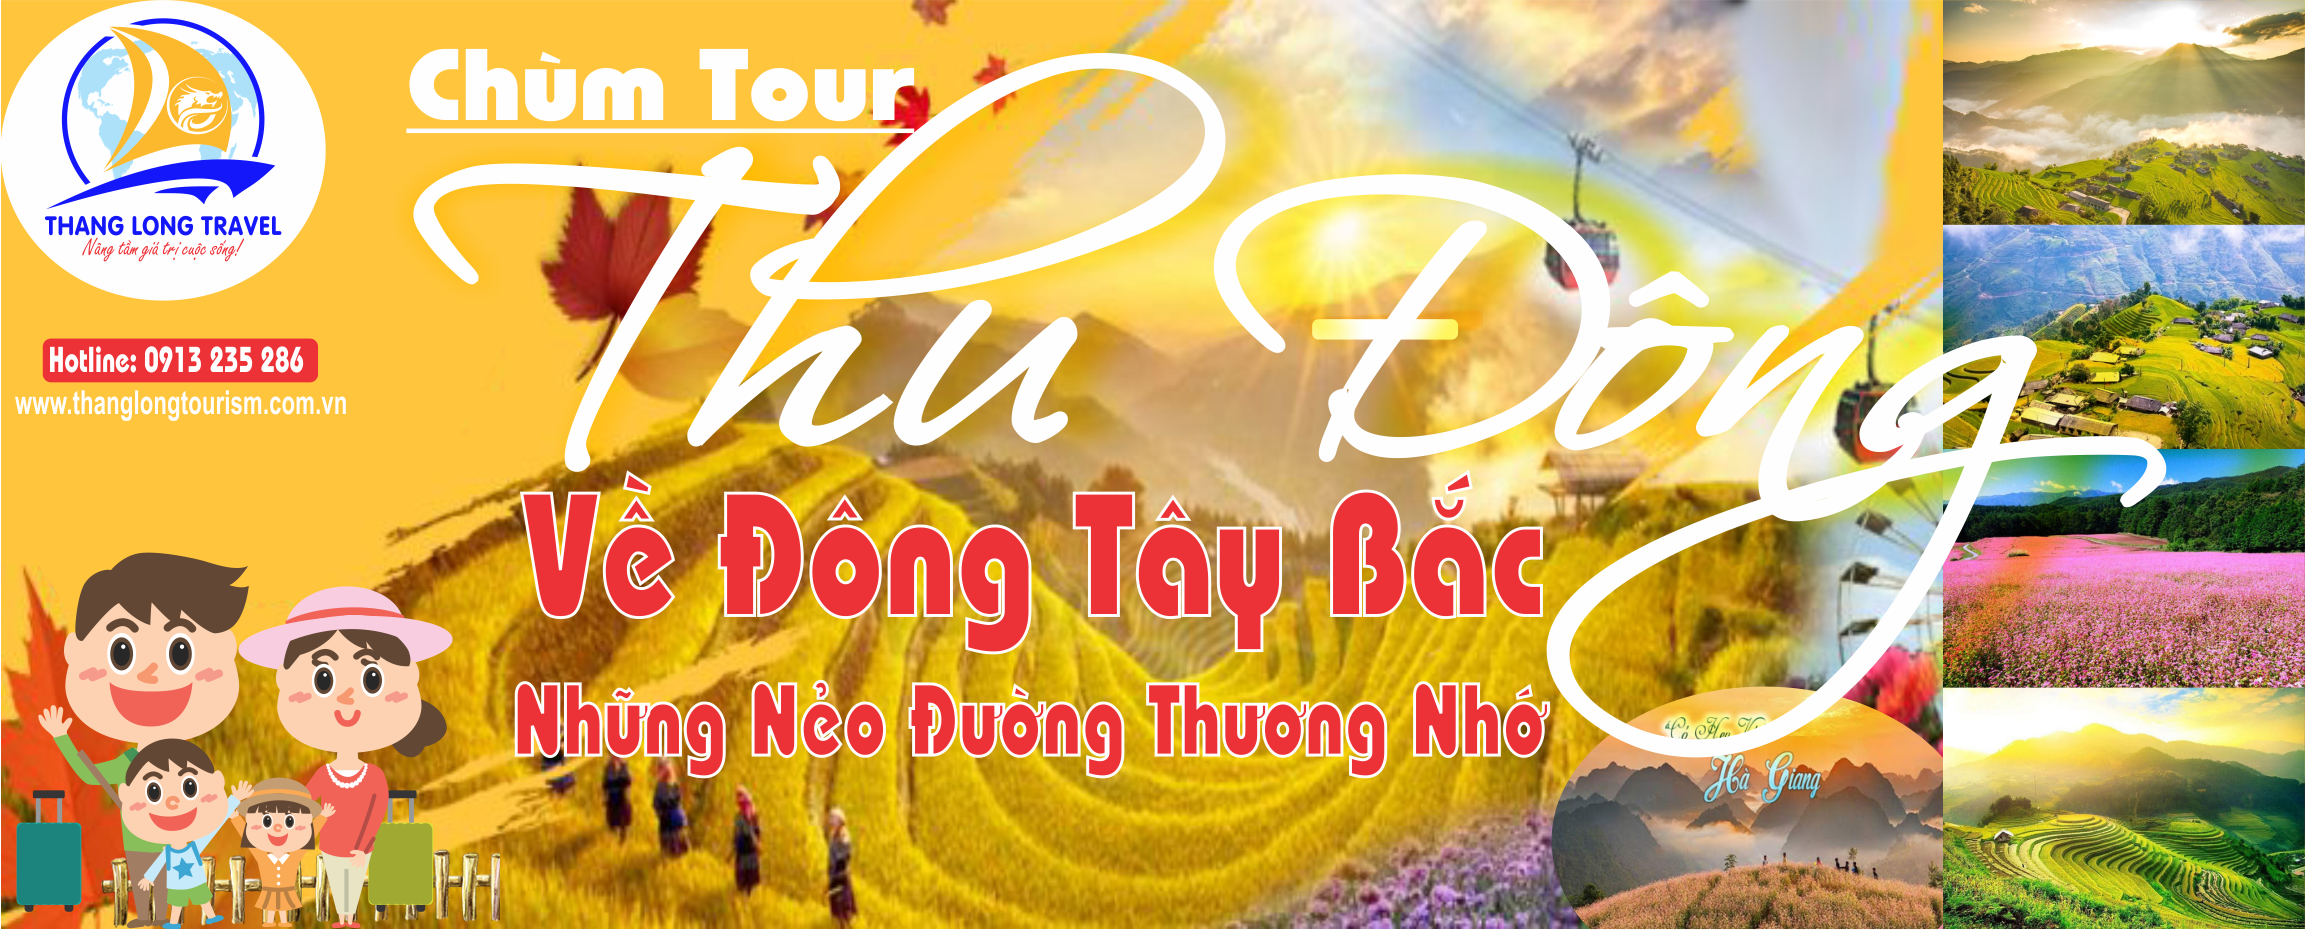 http://thanglongtourism.com.vn/tour-kich-cau-2020